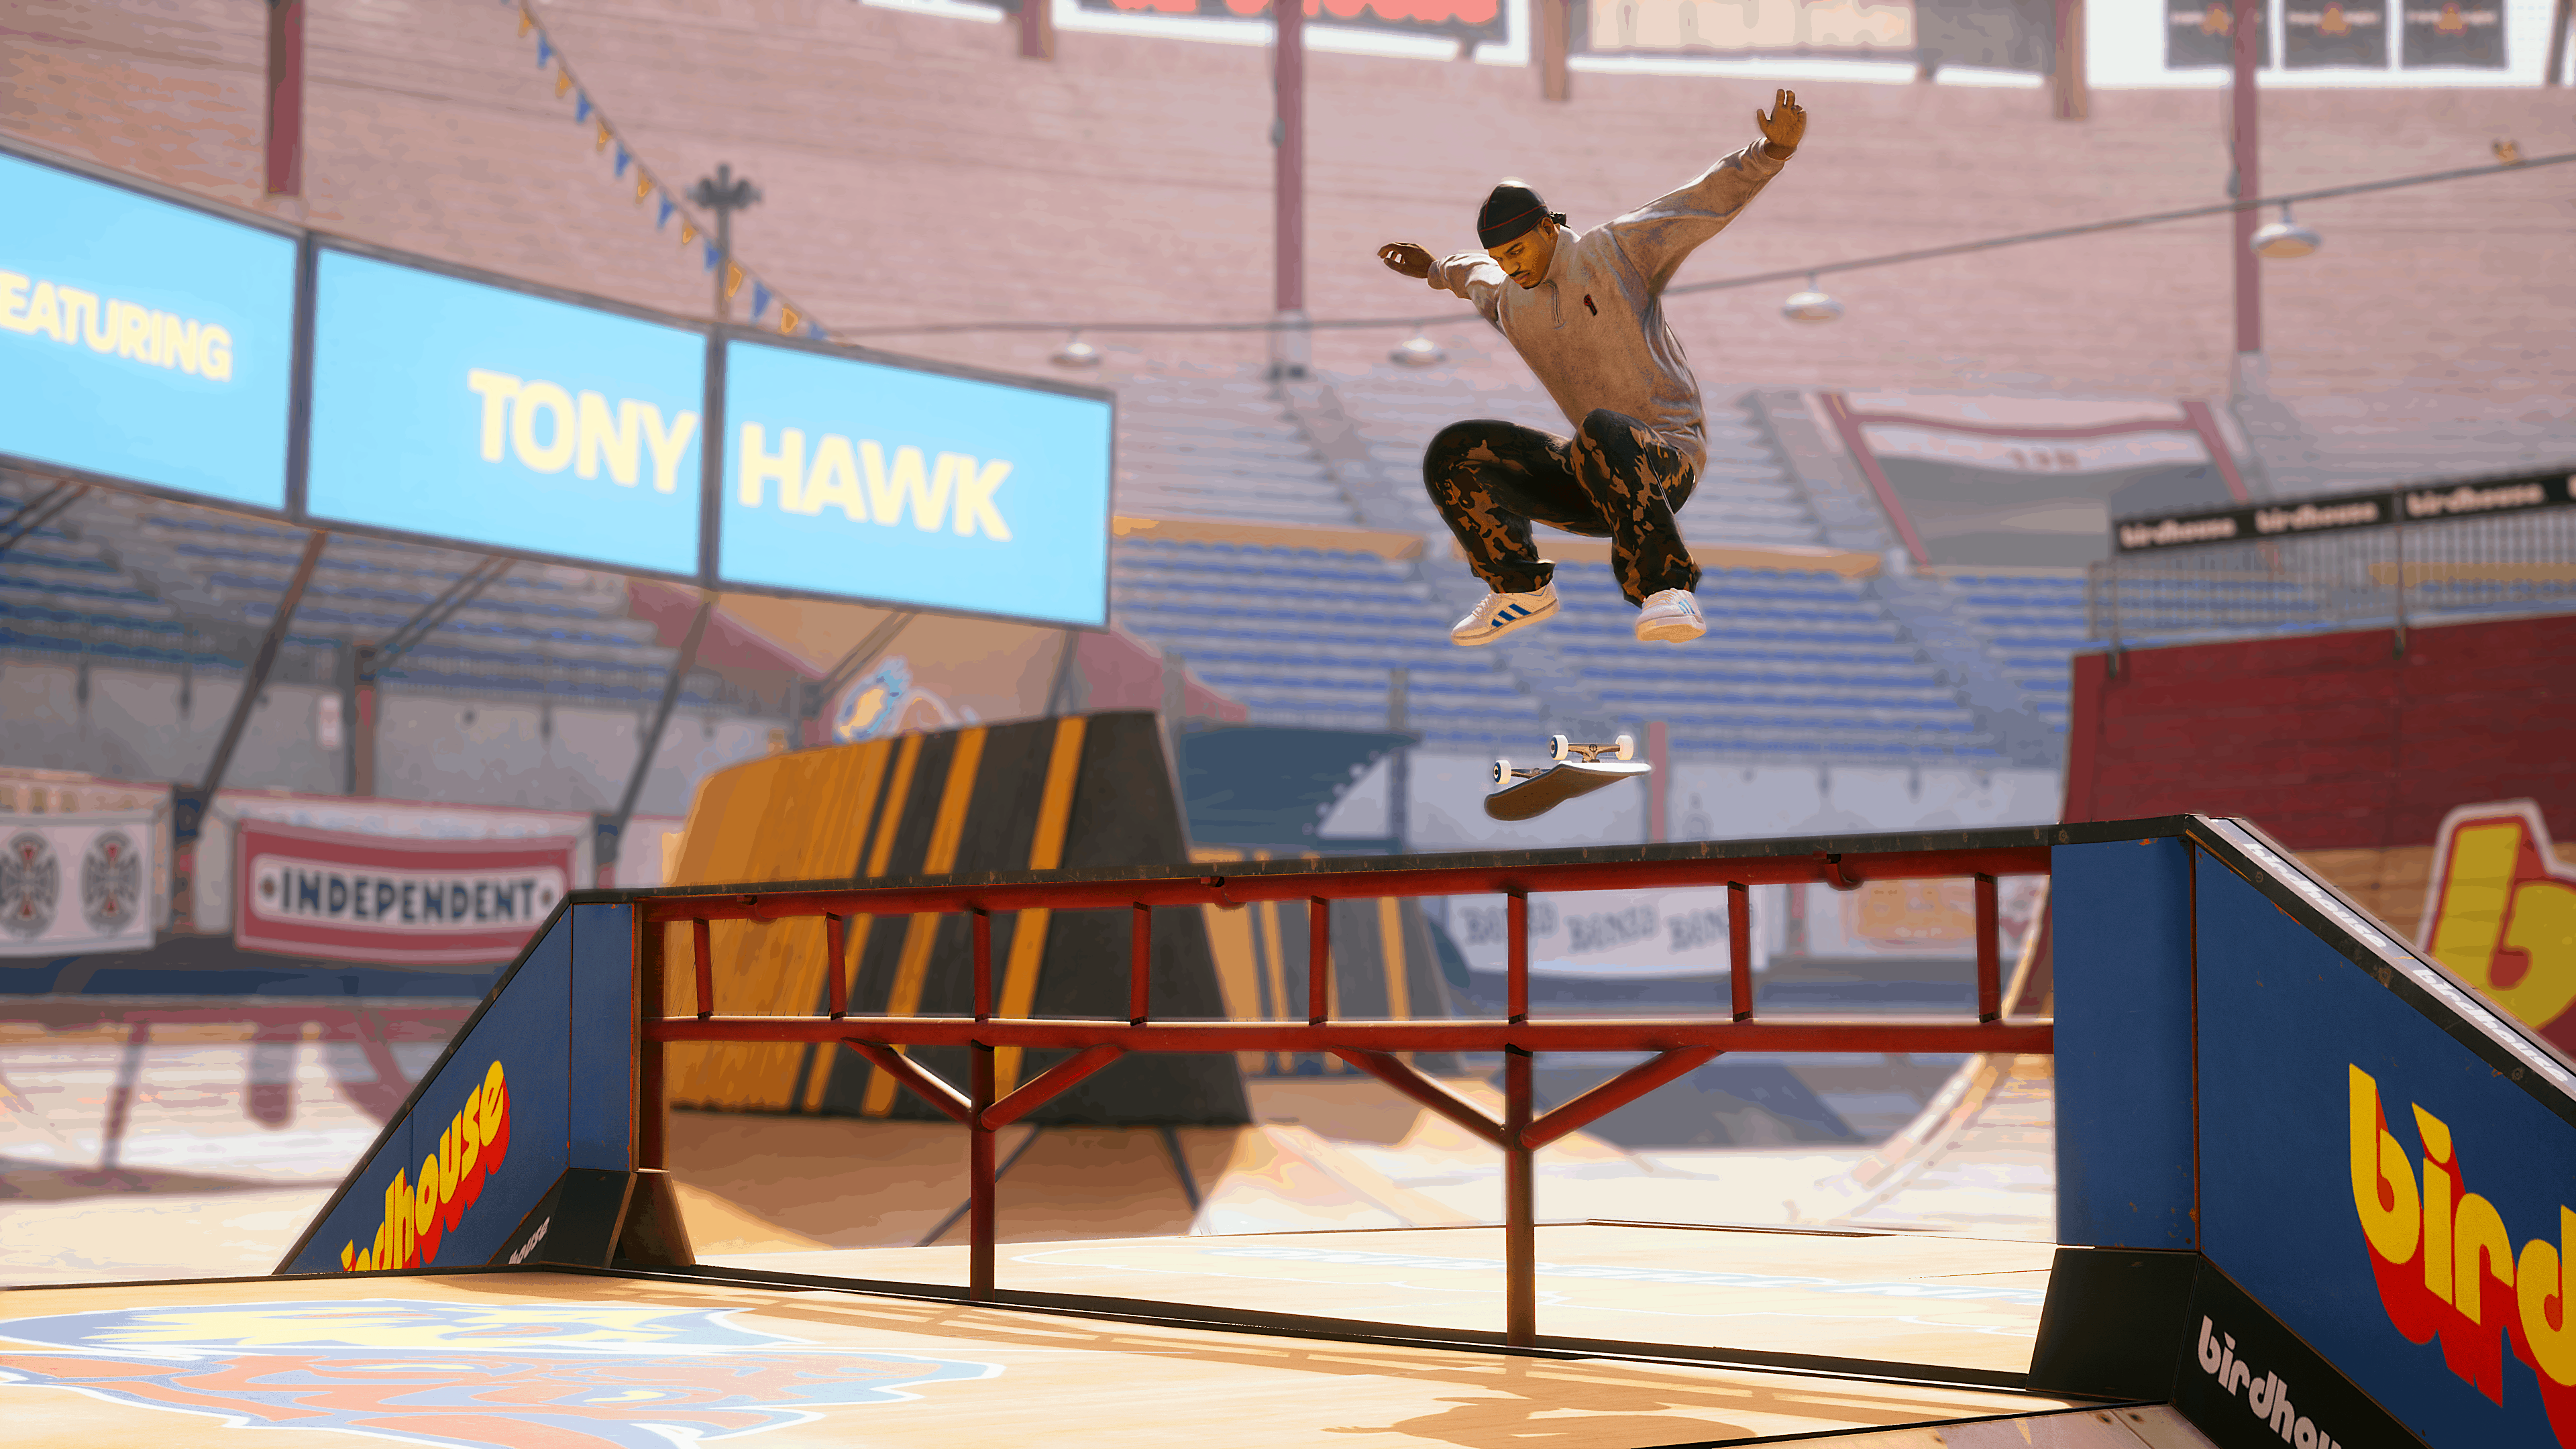 Tony Hawk’s Pro Skater 1 & 2